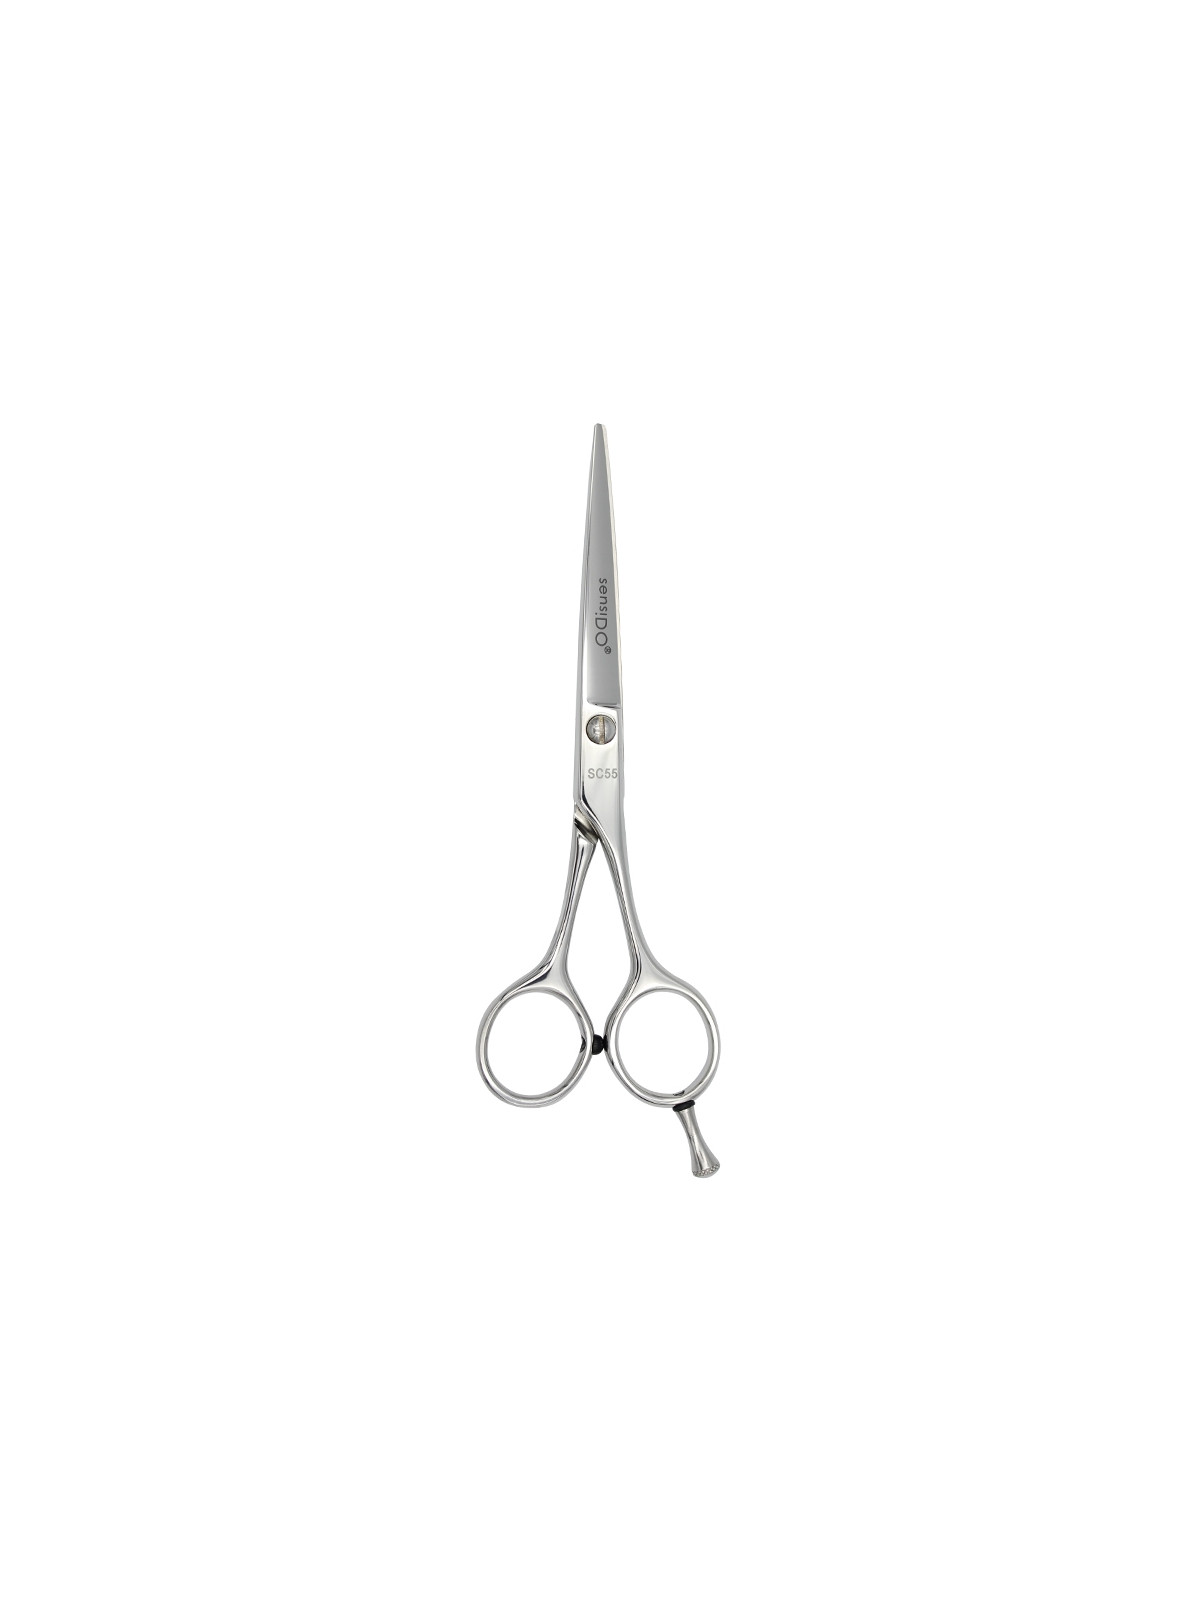 SensiDO SC cutting scissors